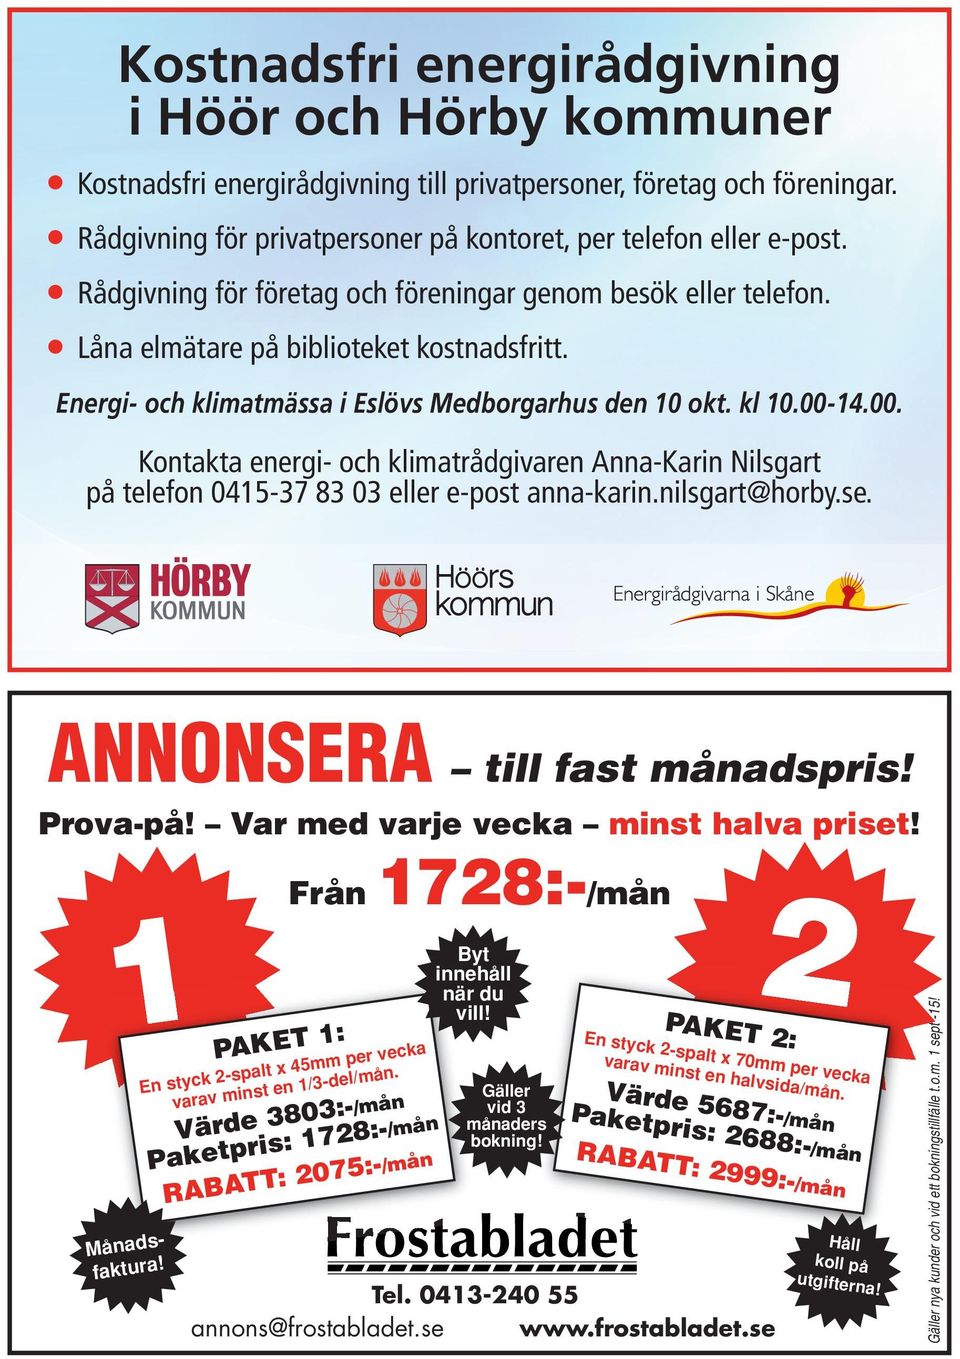 14.00. Kontakta energi- och klimatrådgivaren Anna-Karin Nilsgart på telefon 0415-37 83 03 eller e-post anna-karin.nilsgart@horby.se. ANNONSERA till fast månadspris! Prova-på!